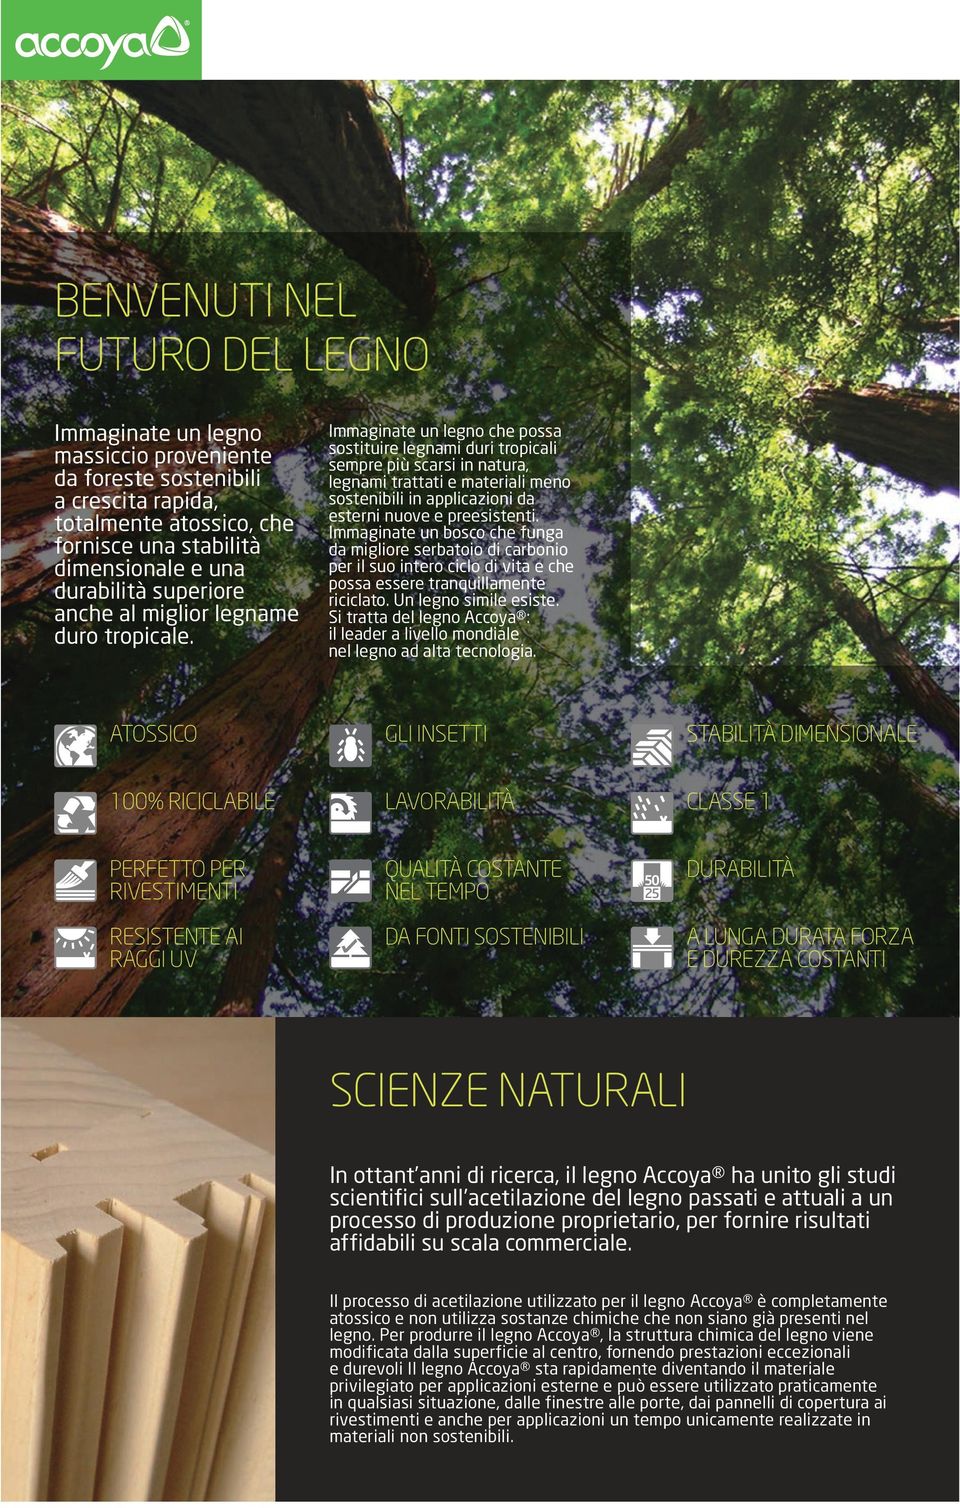 Immaginate un legno che possa sostituire legnami duri tropicali sempre più scarsi in natura, legnami trattati e materiali meno sostenibili in applicazioni da esterni nuove e preesistenti.